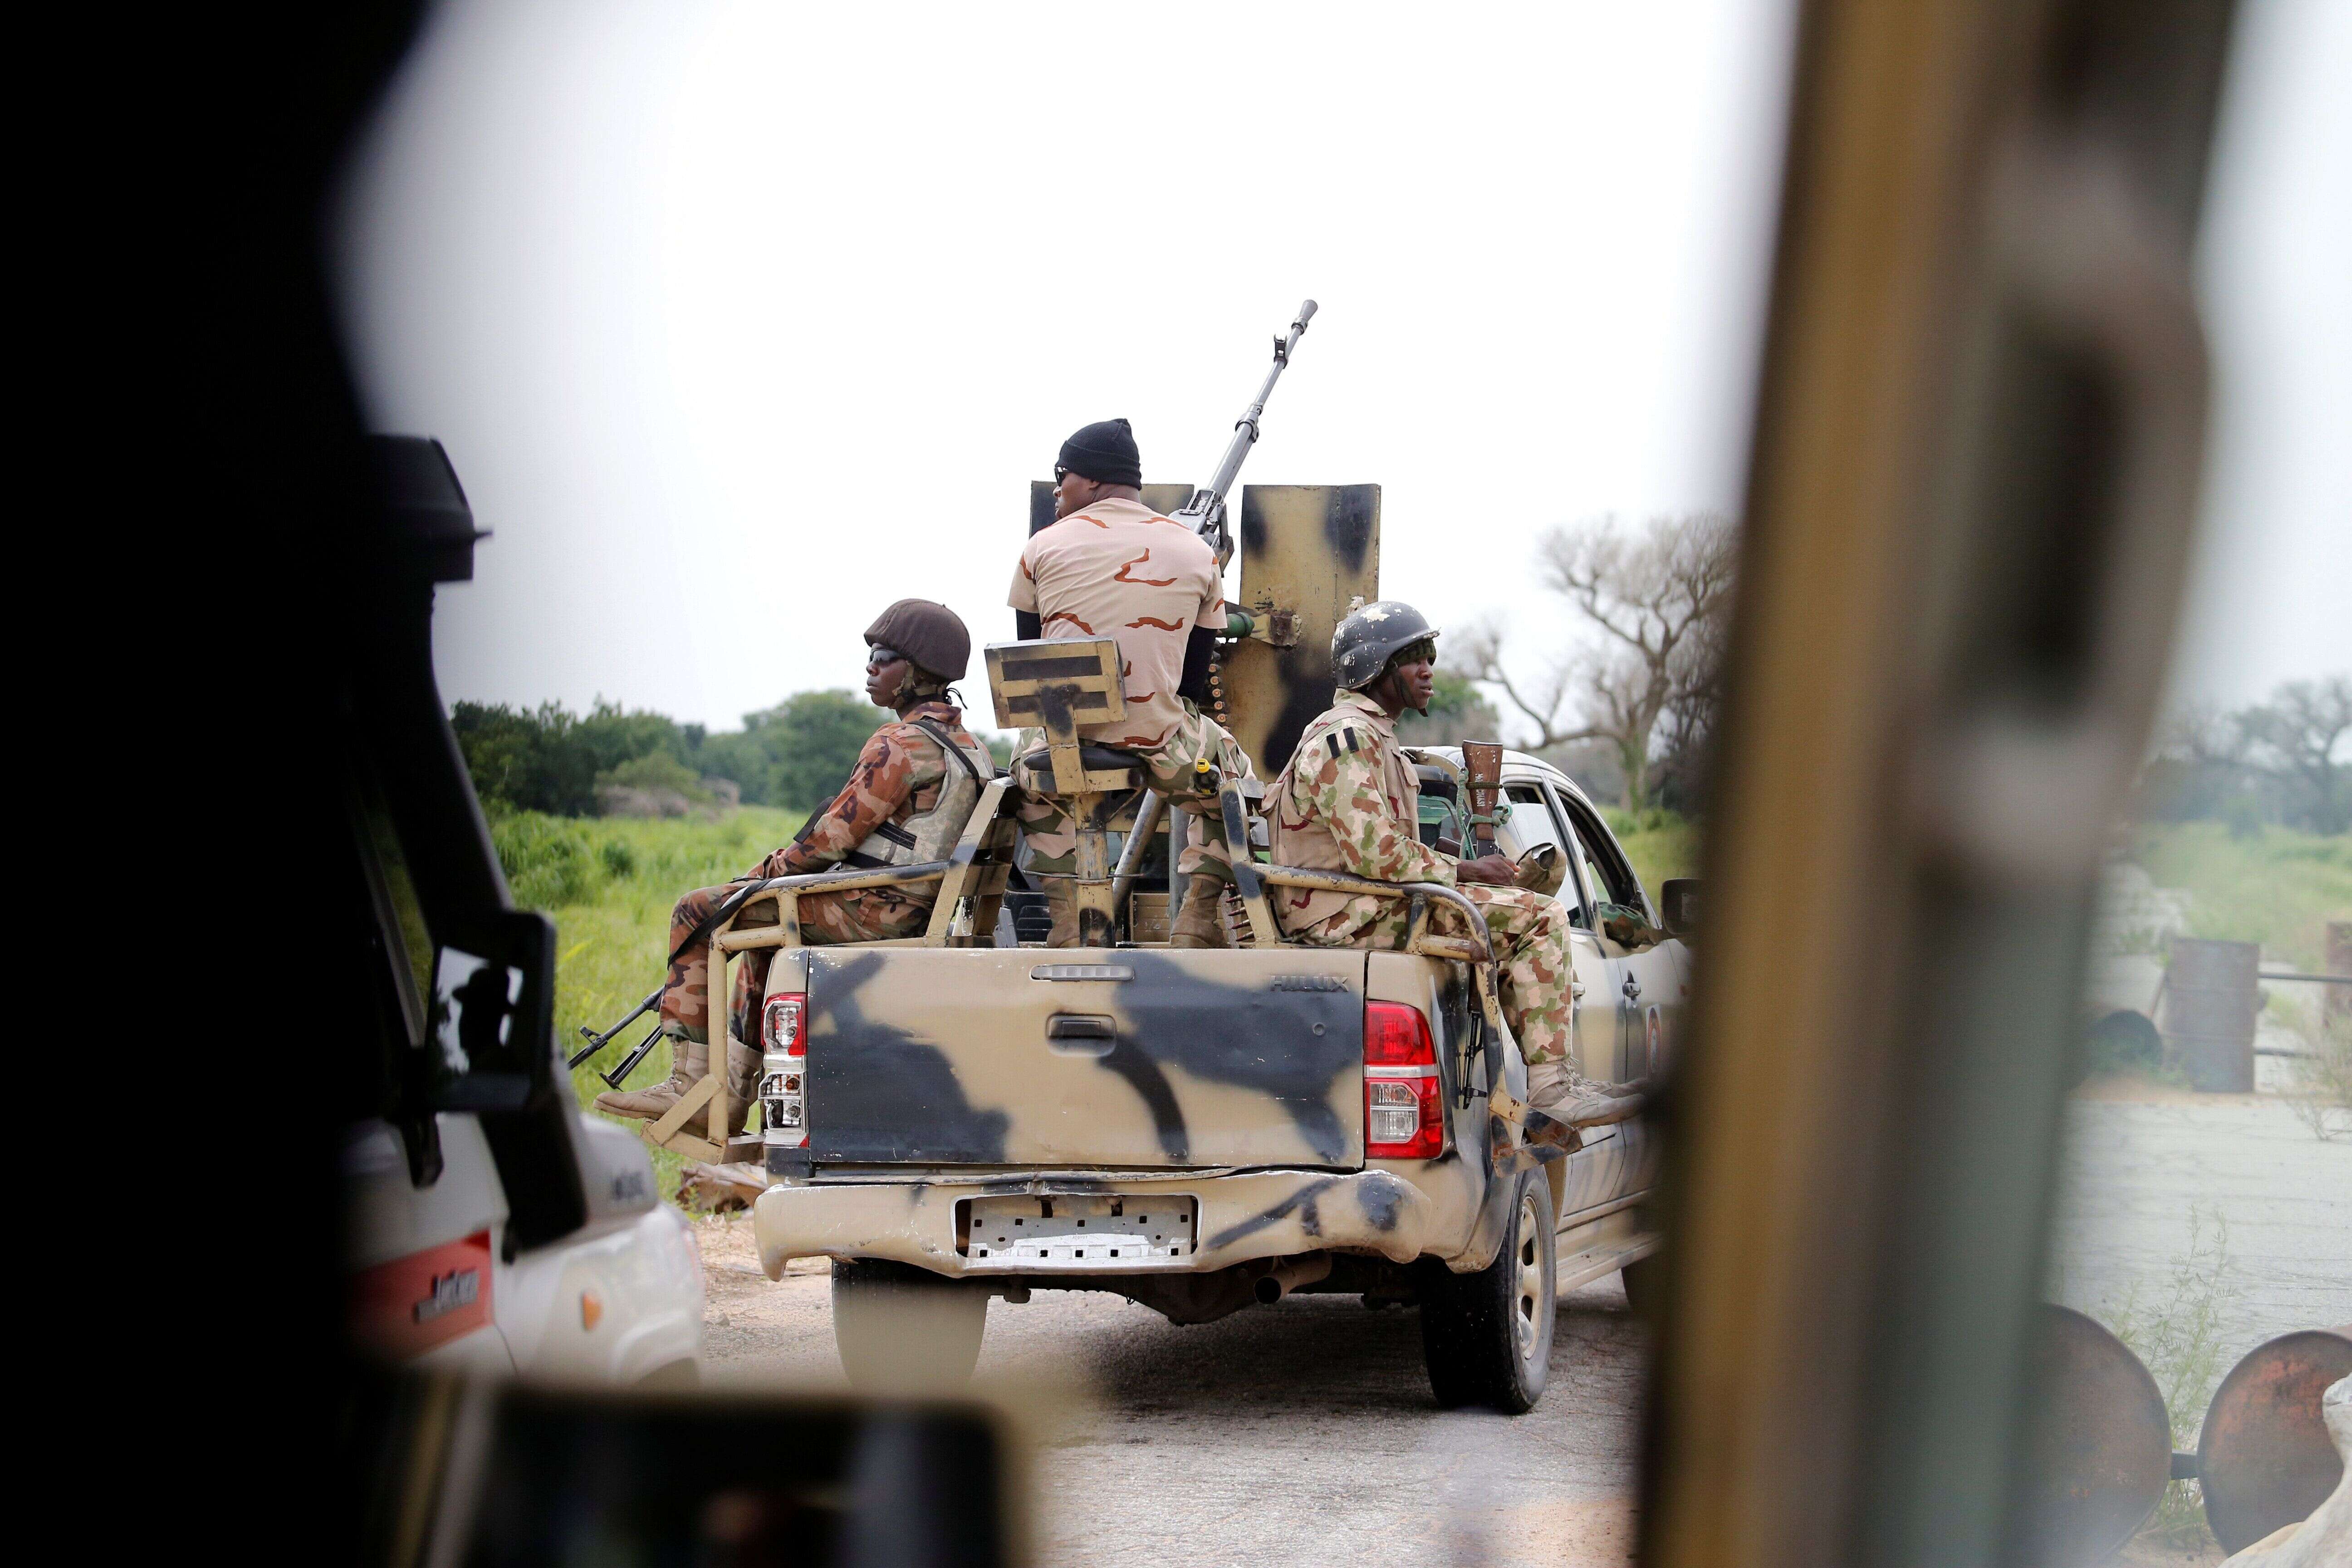 Un salarié de l'ONG Action contre la faim exécuté par des jihadistes nigérians (photo d'illustration d'un véhicule de l'armée nigérienne le 31 août 2016)